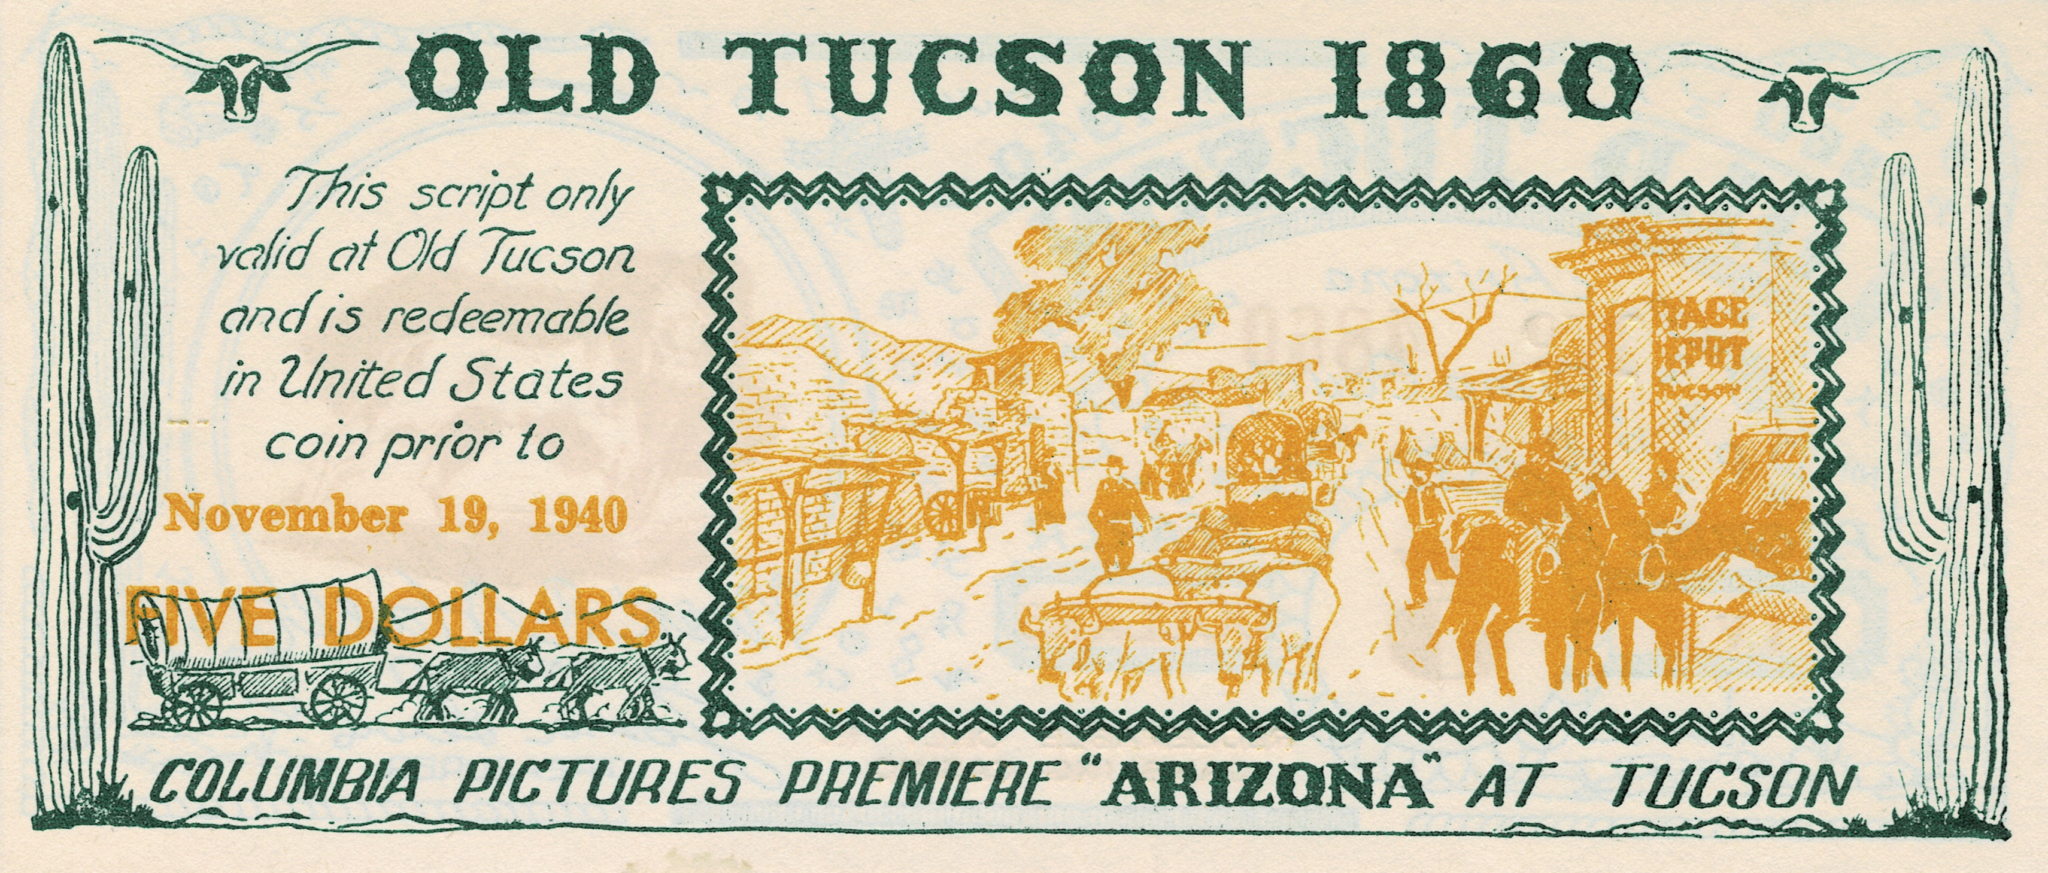 El Tucsonense, 1939-12-15 - El Tucsonense - The collections